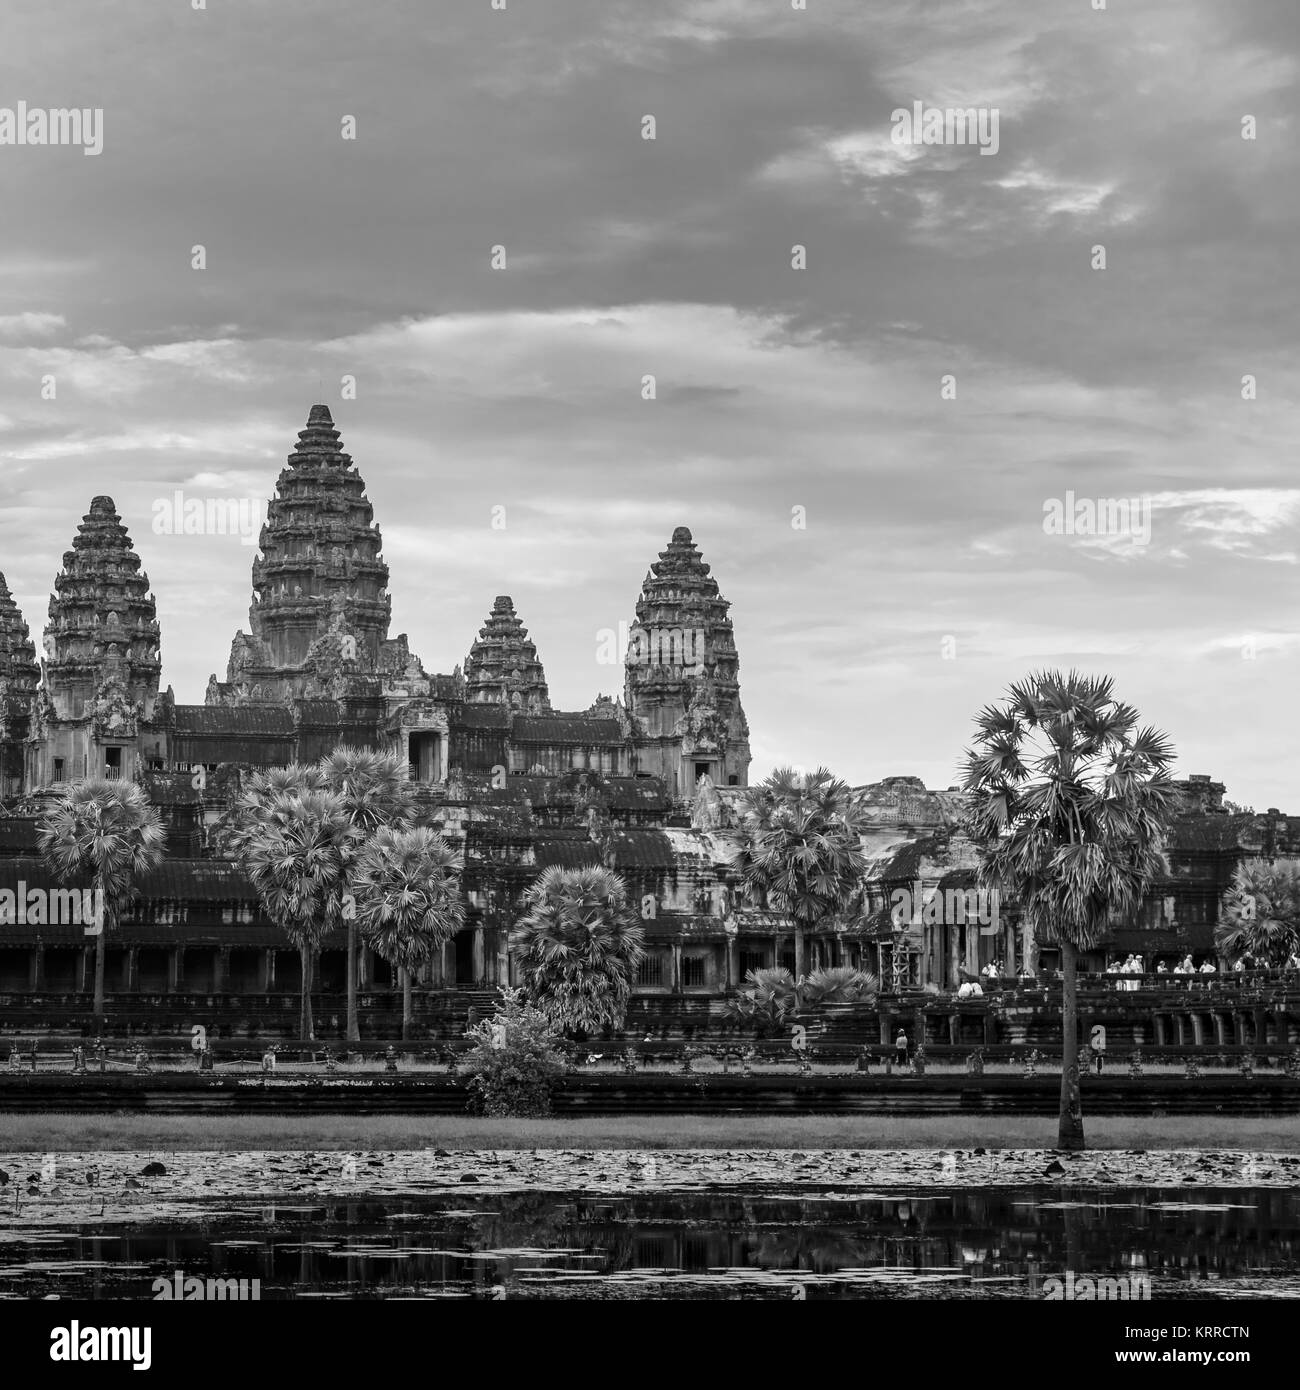 Vue de l'icône de tours à Angkor Wat, un complexe de temple près de Siem Reap au Cambodge et le plus grand monument religieux du monde, en noir et blanc Banque D'Images